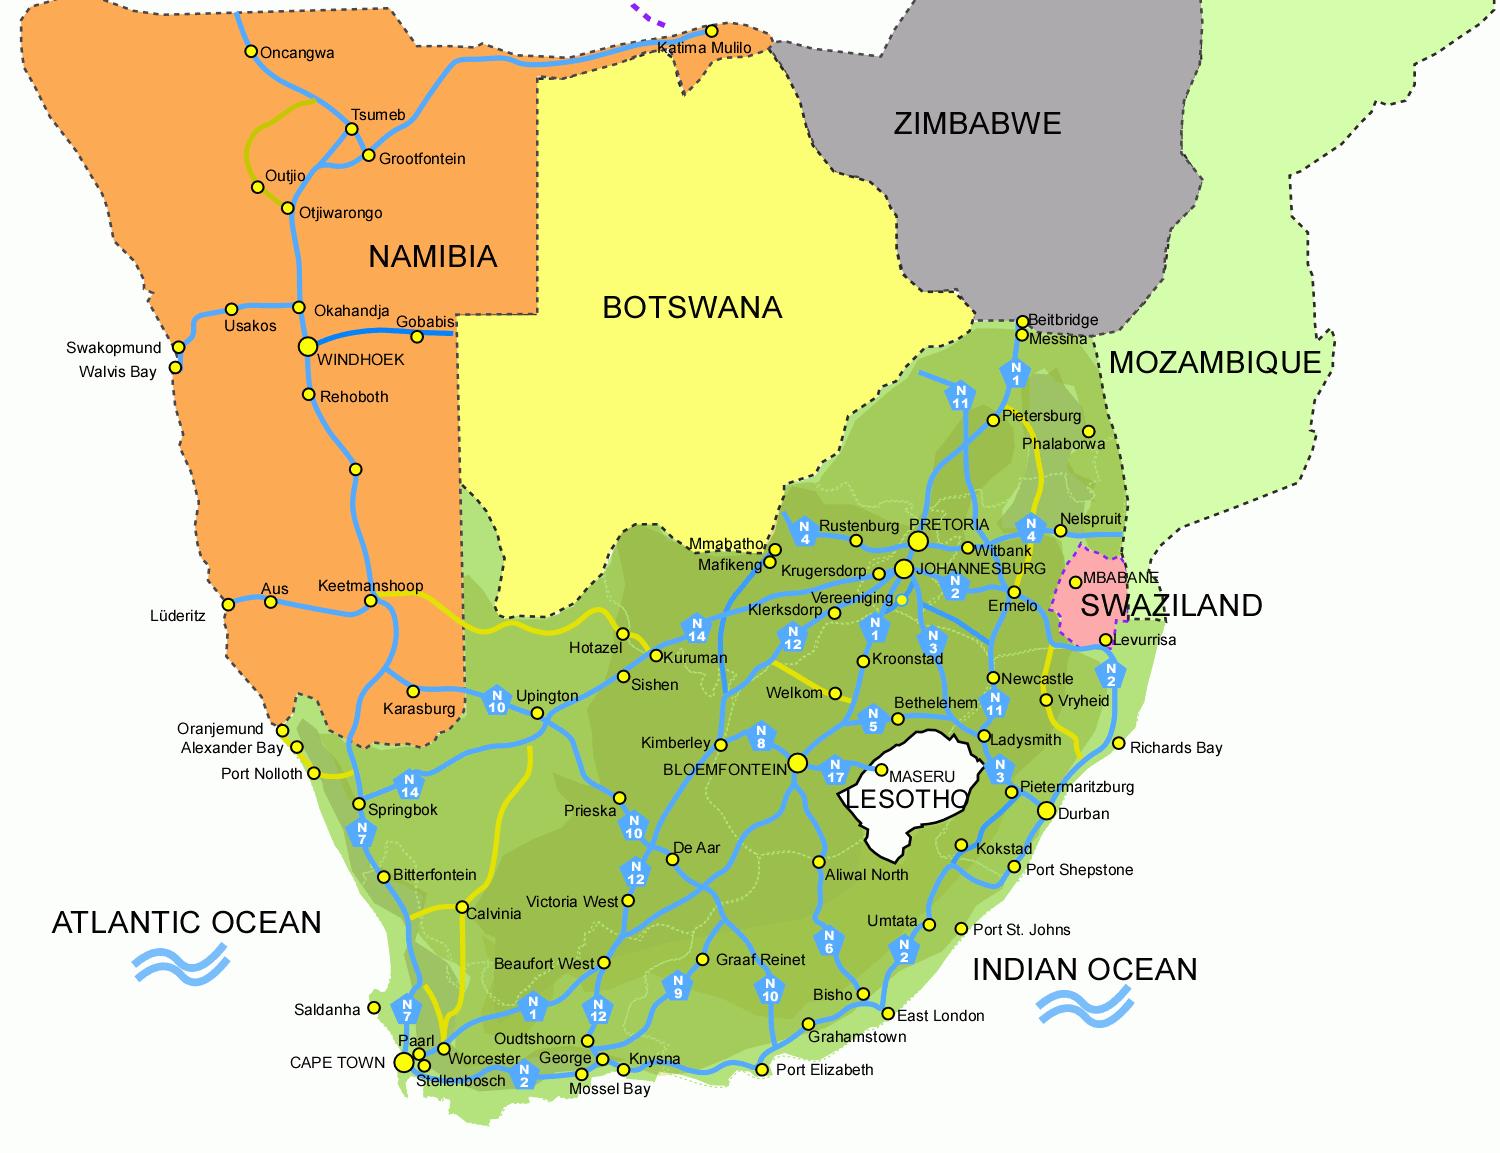 Lesotho sydafrika karta - Karta över Lesotho och sydafrika (Södra